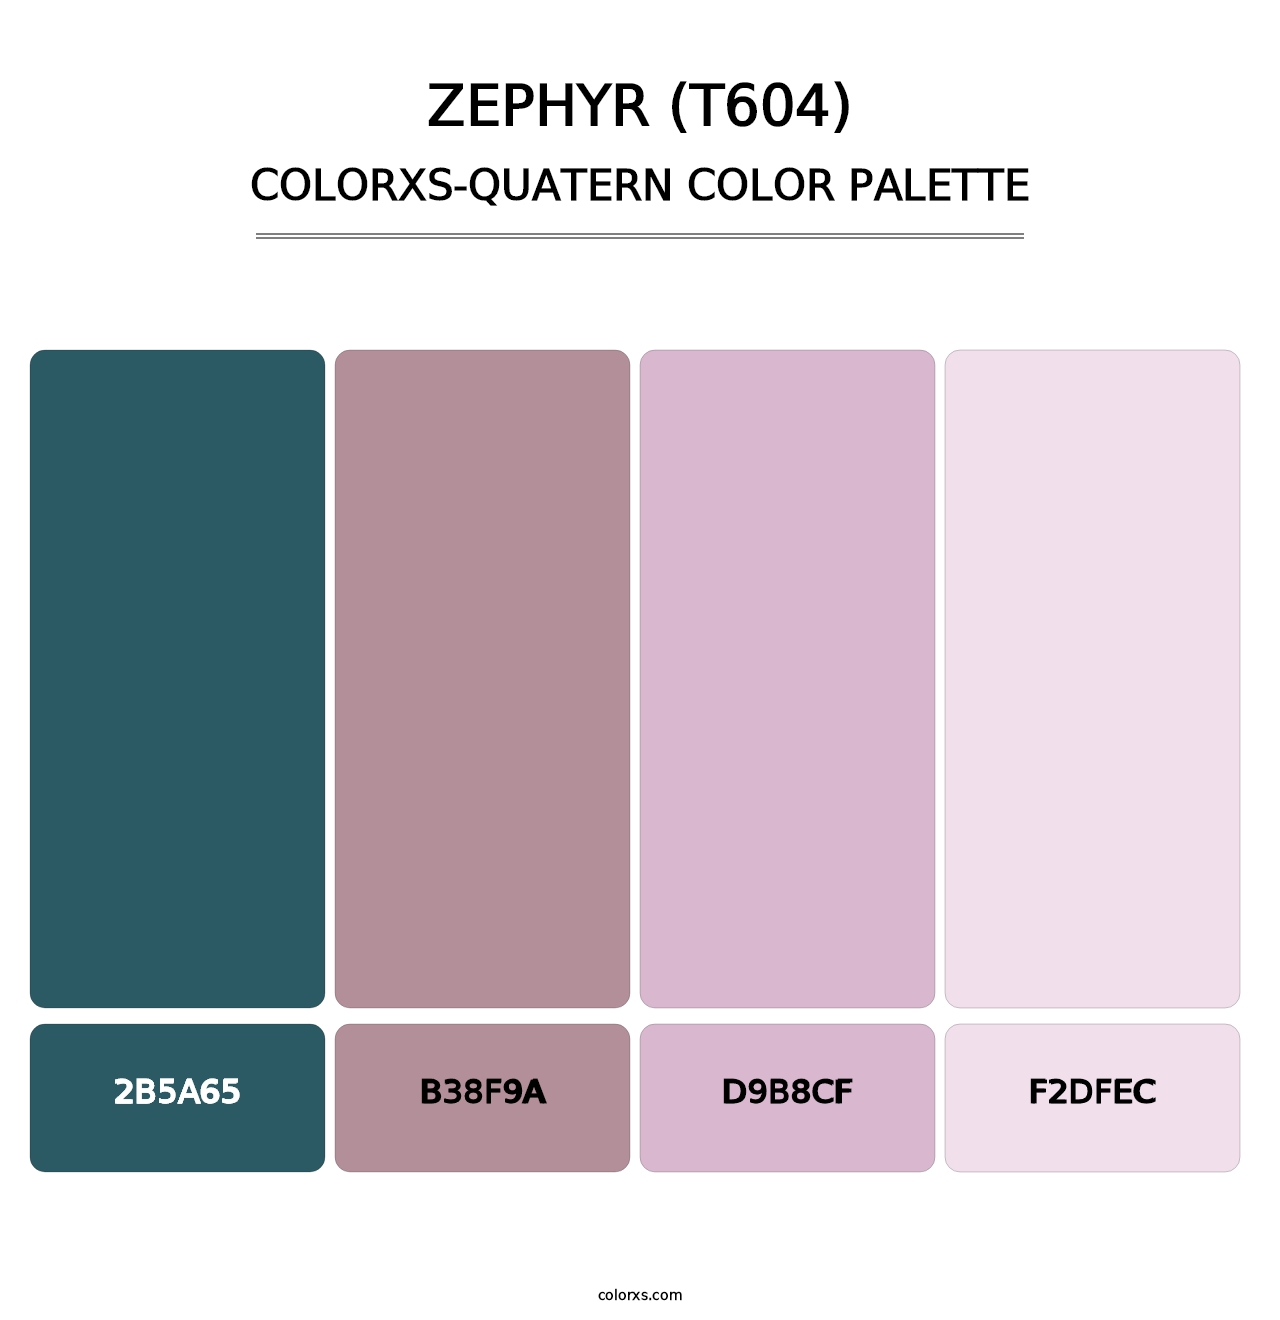 Zephyr (T604) - Colorxs Quatern Palette